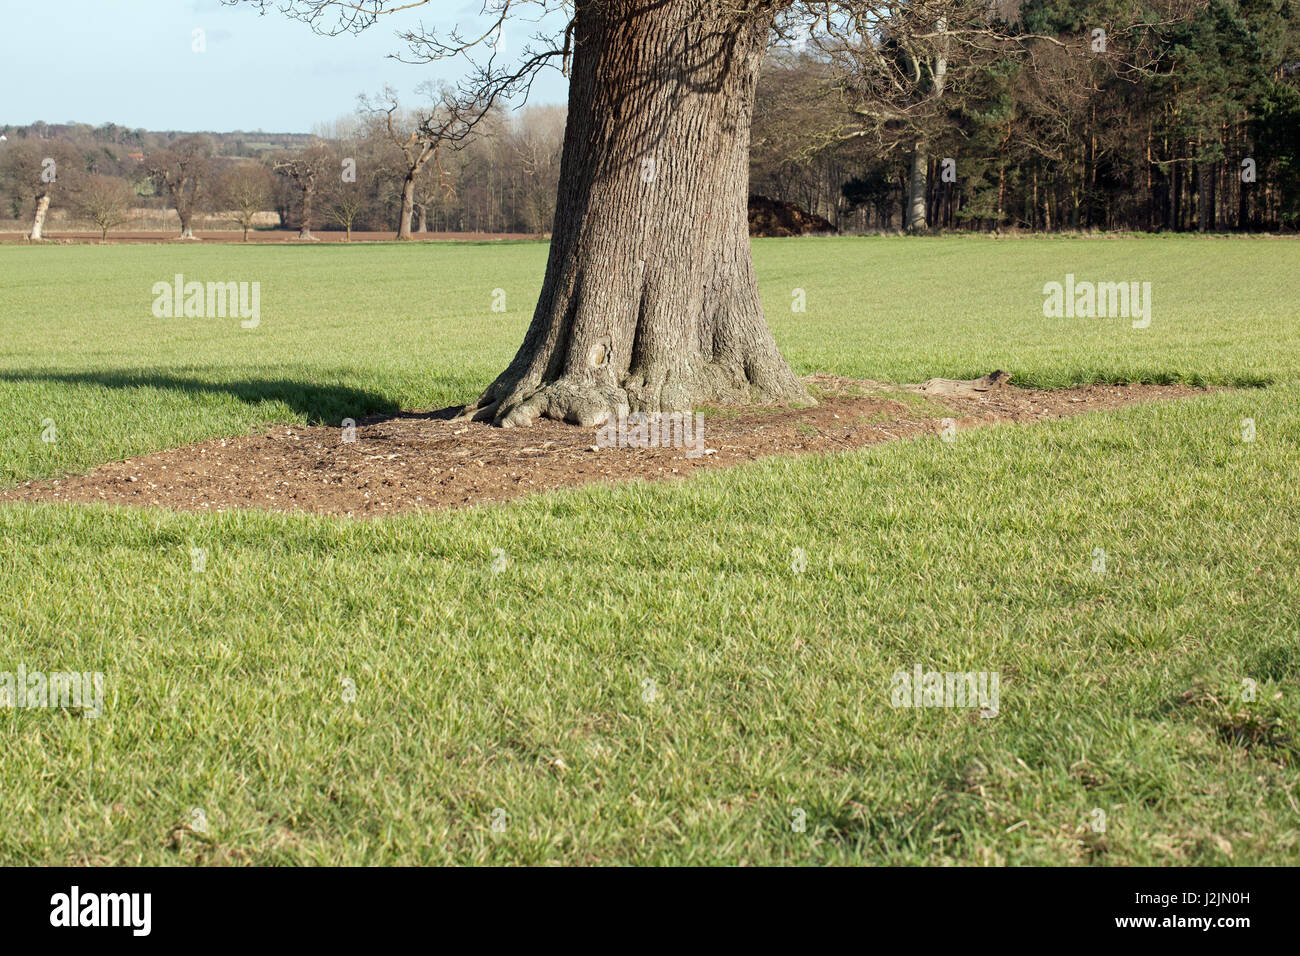 Basis der Eiche (Quercus Rubur), rücksichtsvoll weiten Bogen durch Maschinen zum Schutz der Wurzeln vor Pflug Anteil und Boden Verdichtung Schäden geben. Norfolk. Stockfoto